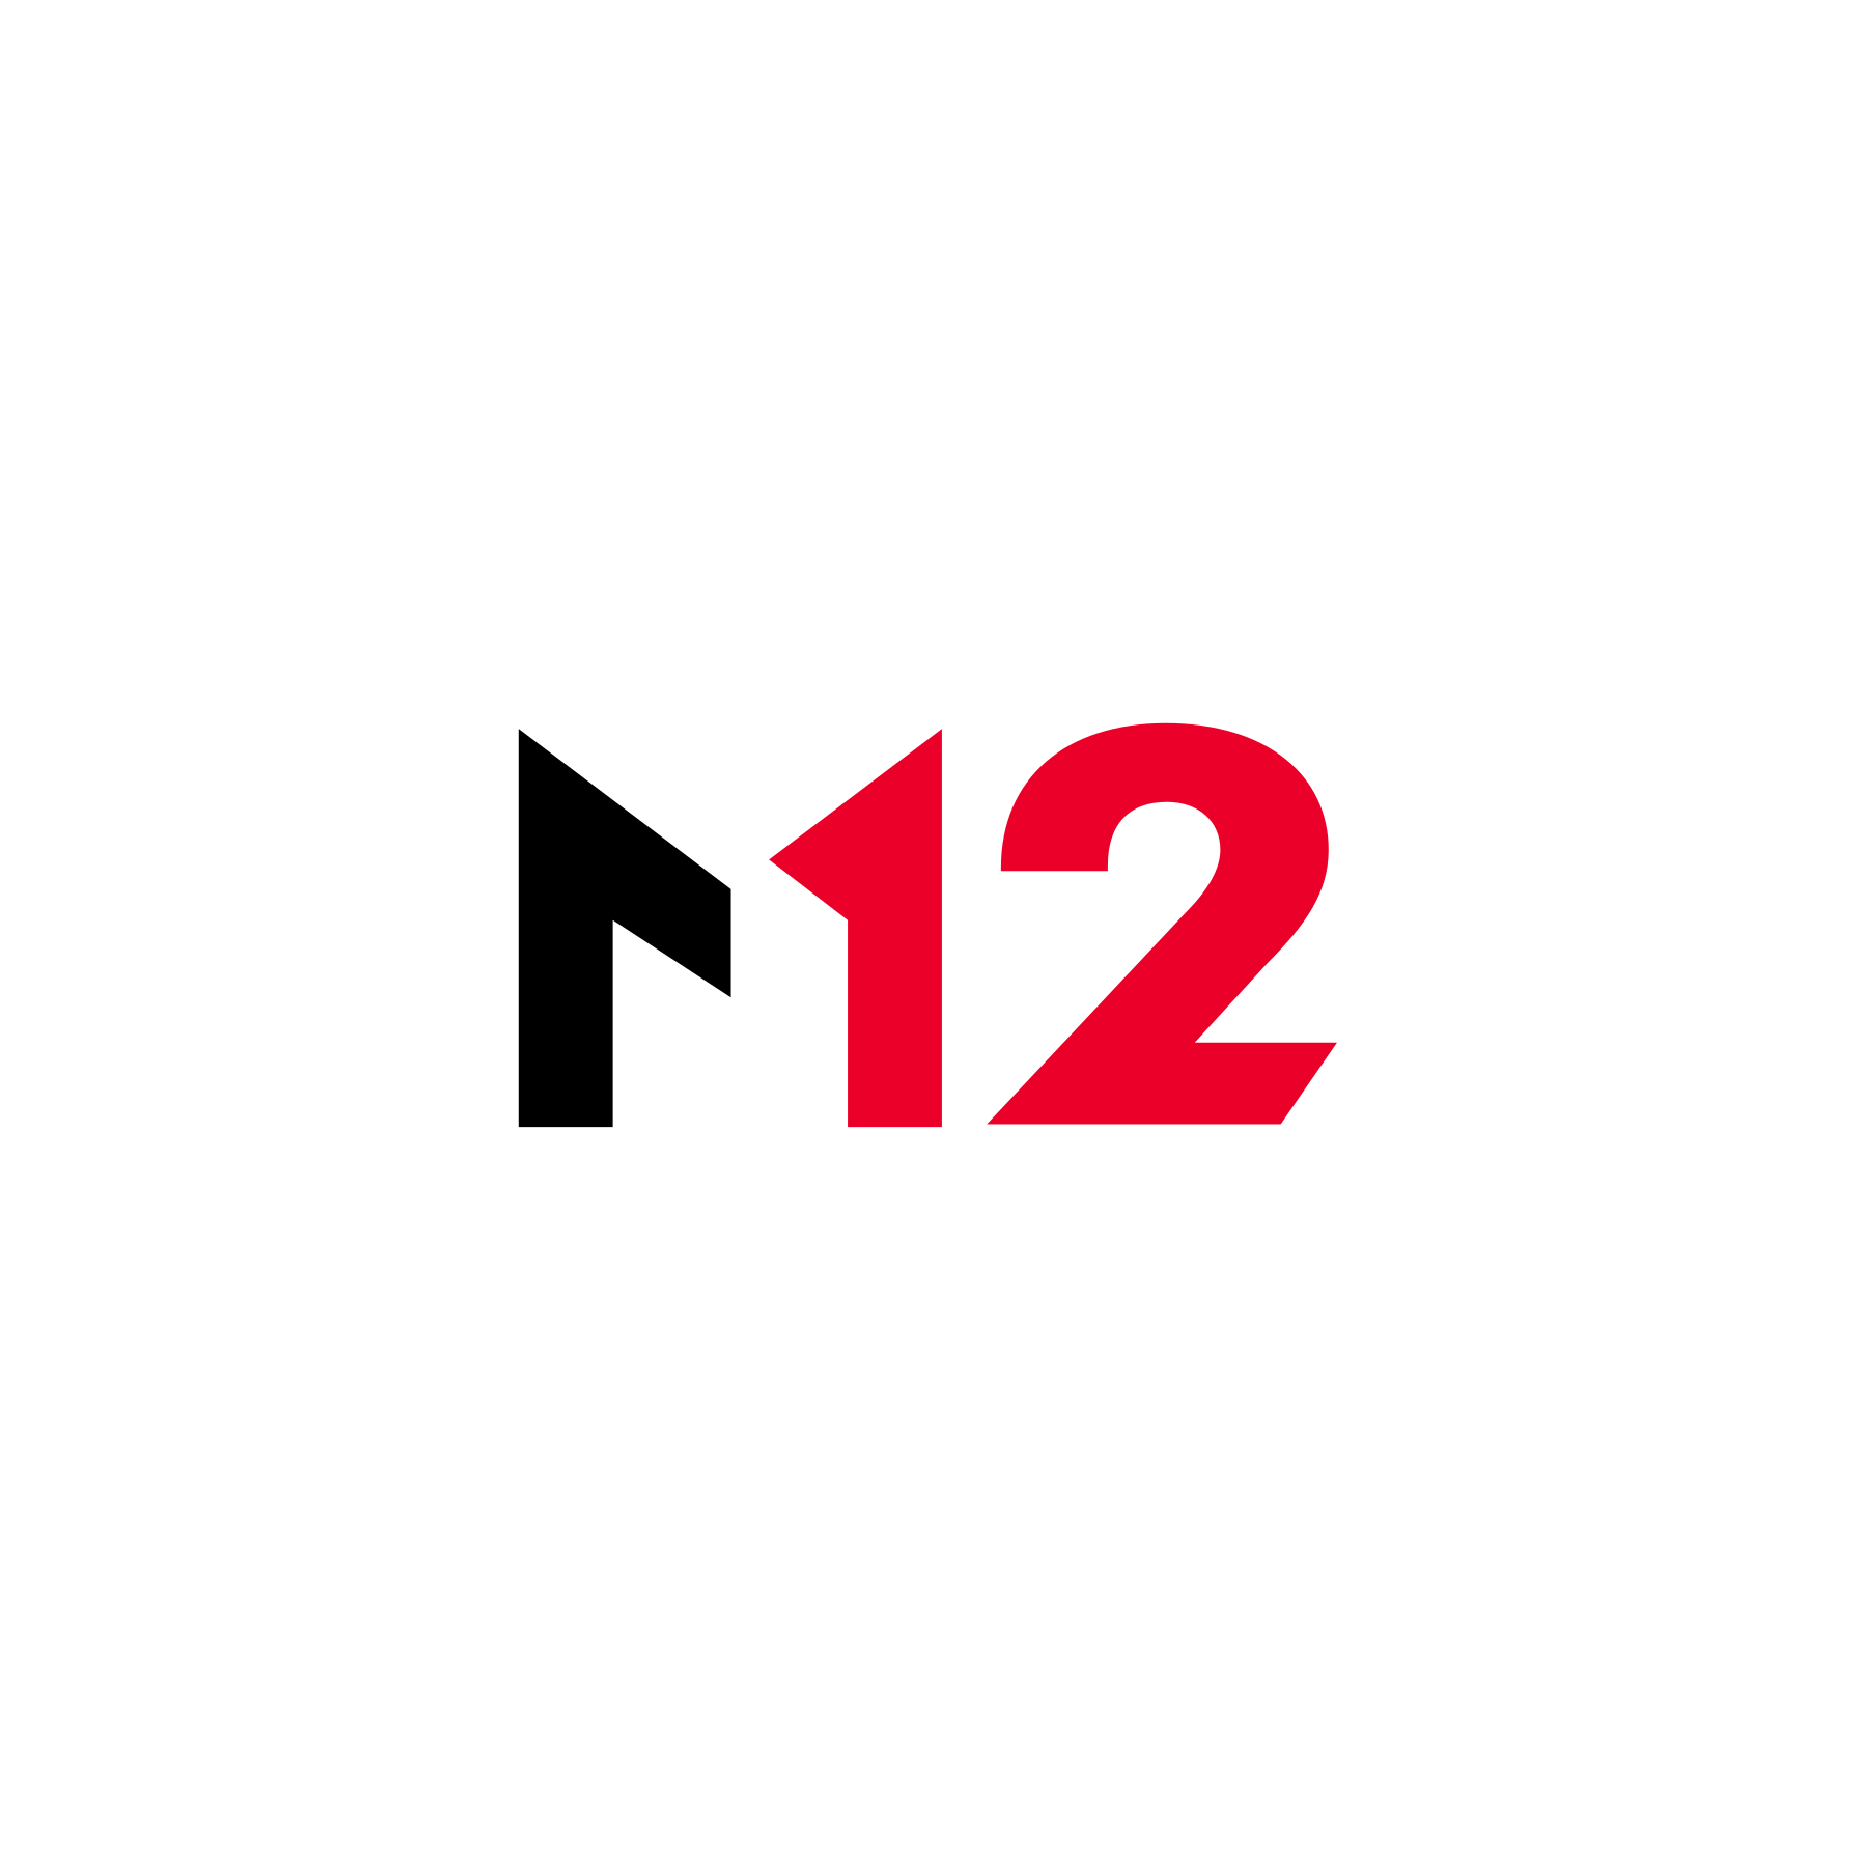 M12 Ventures